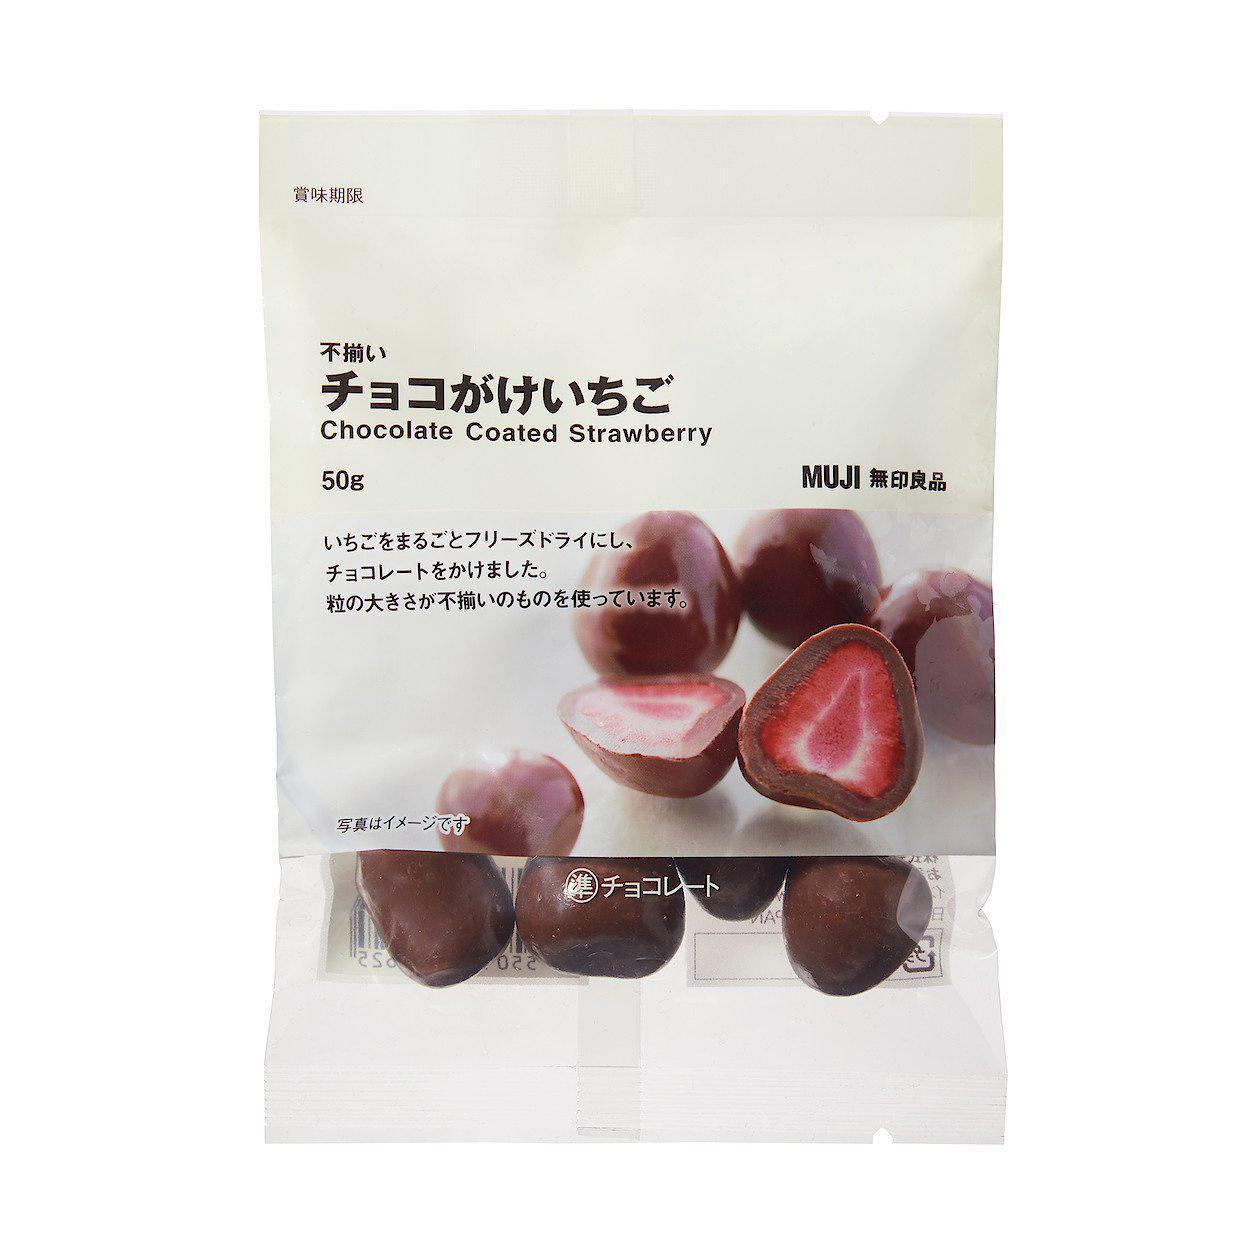 P-1-MUJI-CHOSTR-1-Muji Chocolate Covered Strawberries 50g.jpg